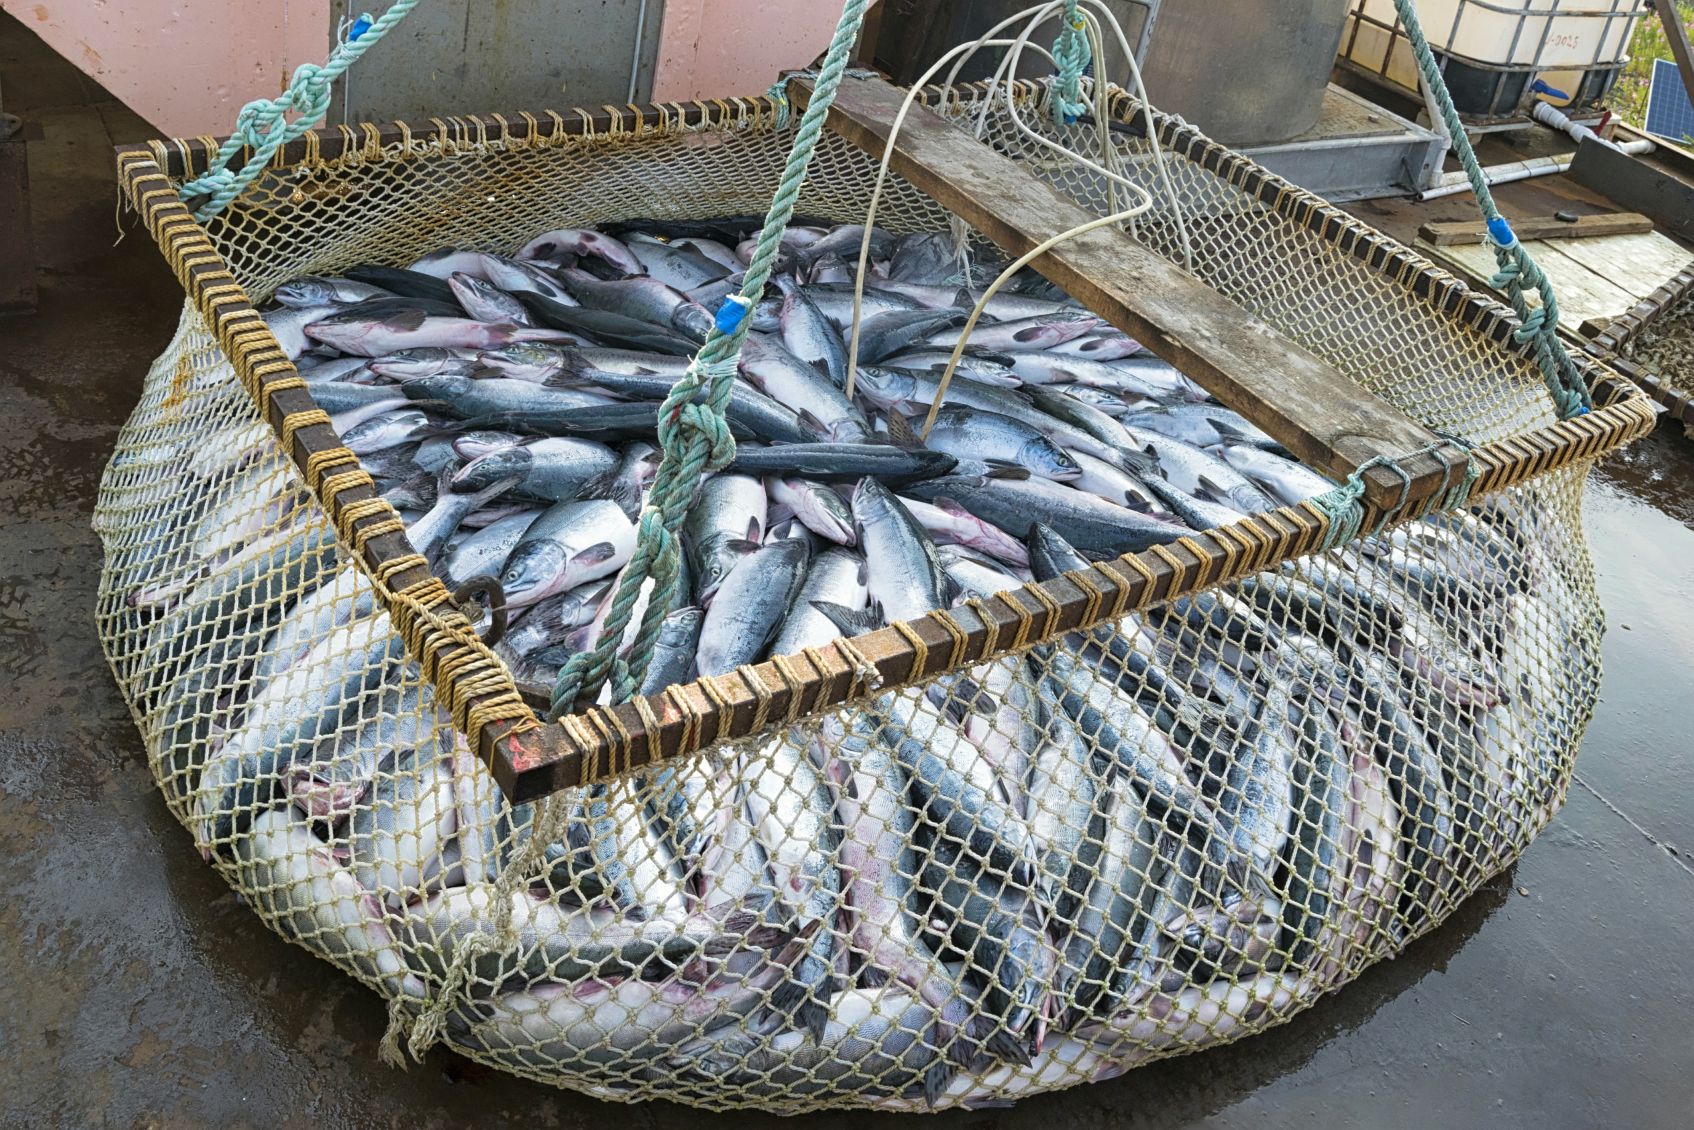 Рыбалка 4 крупная рыба купить в Краснодаре по низкой цене в